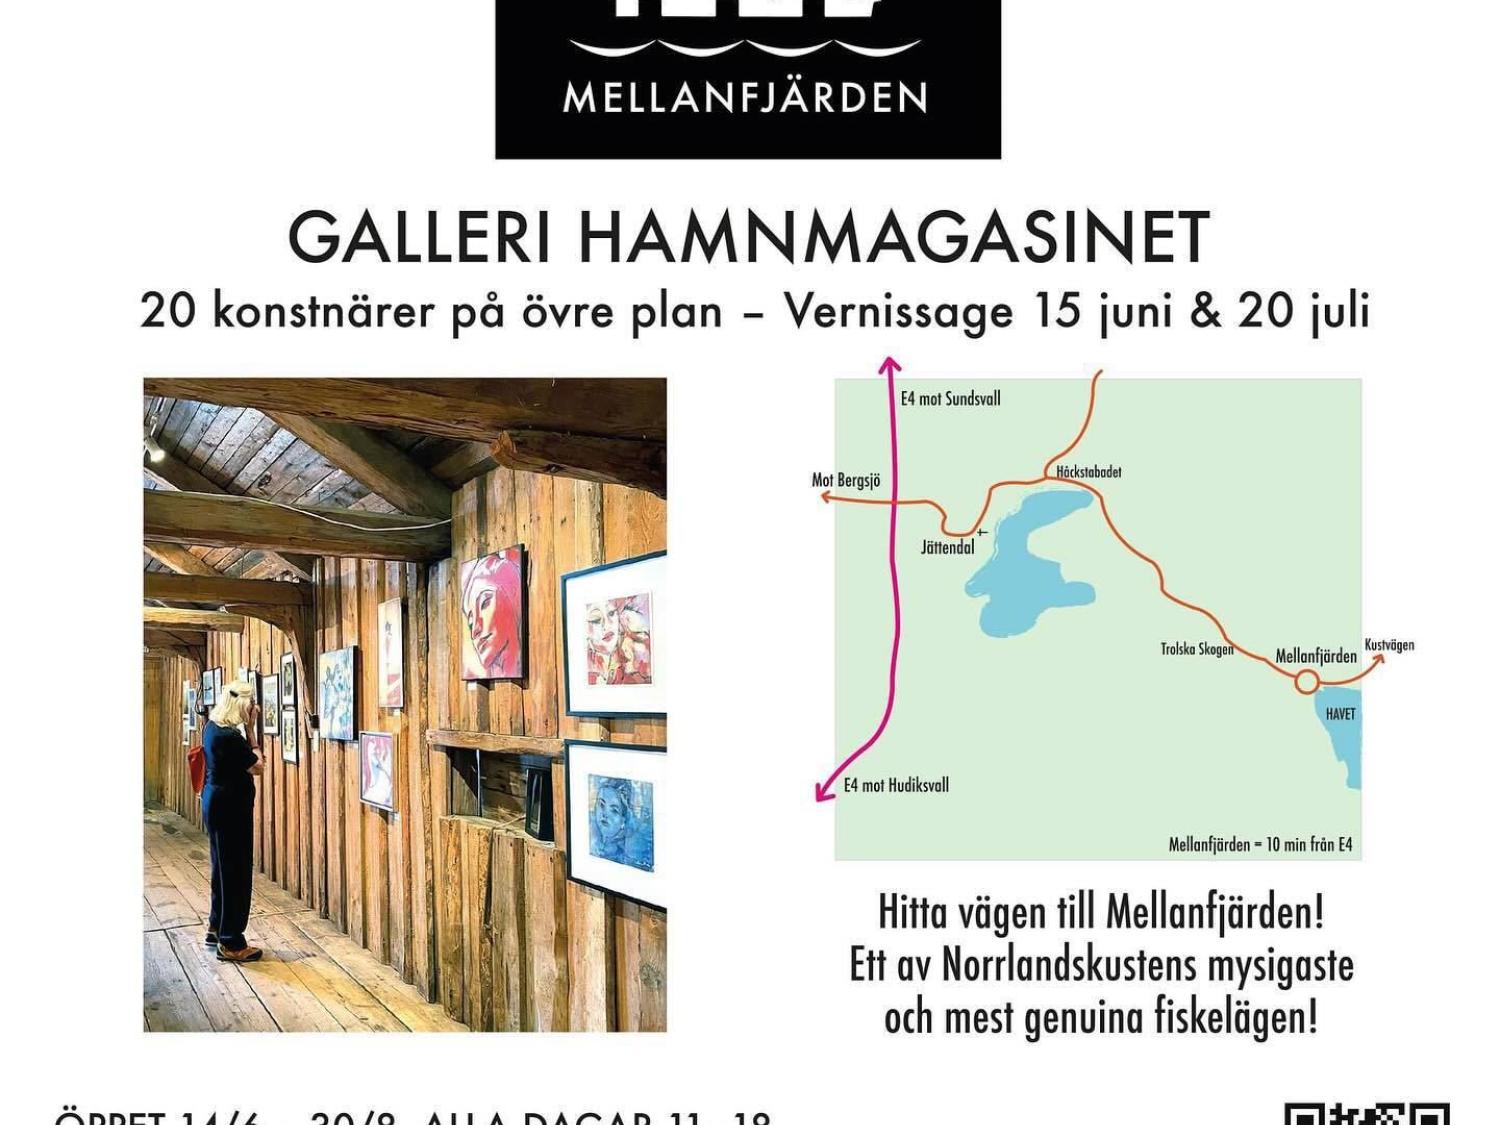 Art & Handicraft - "Hamnmagasinet" Mellanfjärden